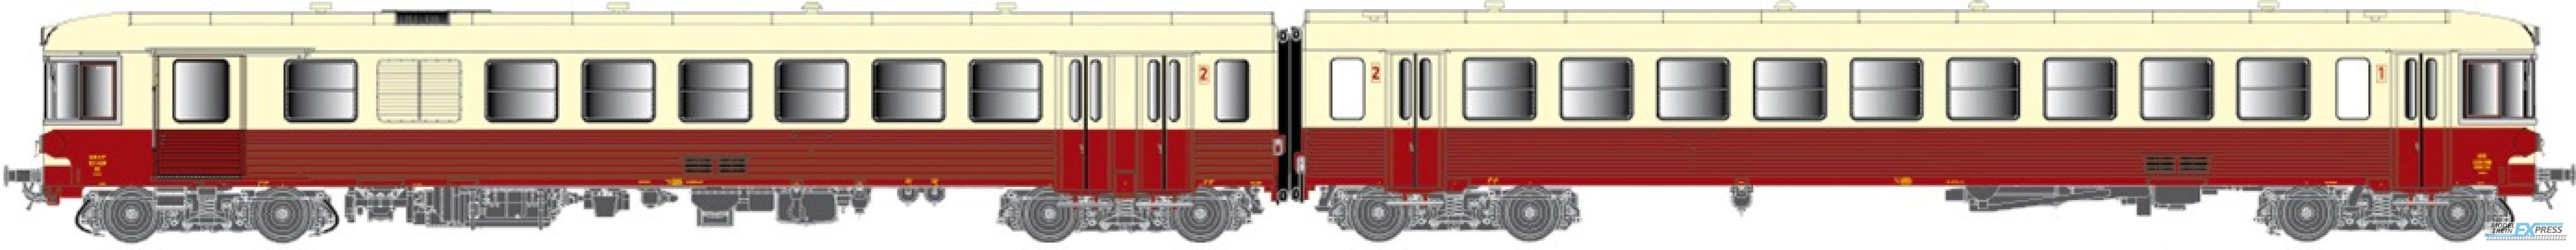 LS Models 10038S X 4329 + XR 8520, rood/creme, rode dak, Panorama raam, oorsprong, met binnenverlichting  /  Ep. IV  /  SNCF  /  HO  /  DC SOUND  /  1 P.